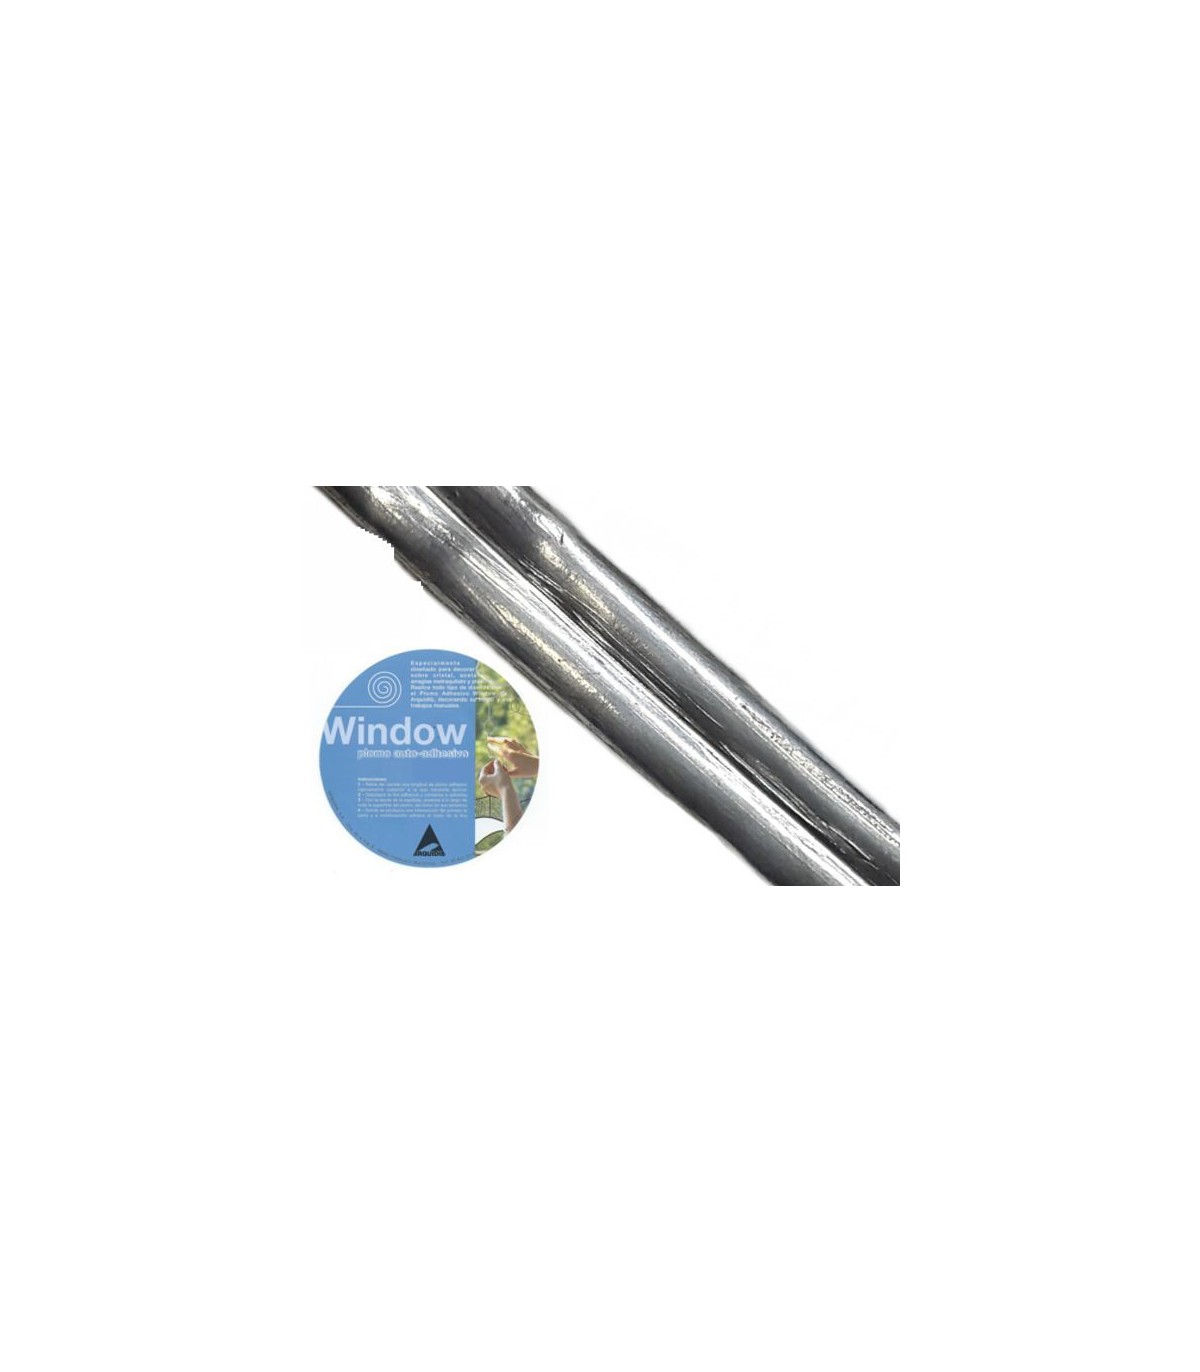 Rouleau de plomb autocollant pour fenêtre 9 mm (argent foncé) - 7,5 m de  long - Avec un gabarit de plomb pour grande fenêtre, un outil d'application